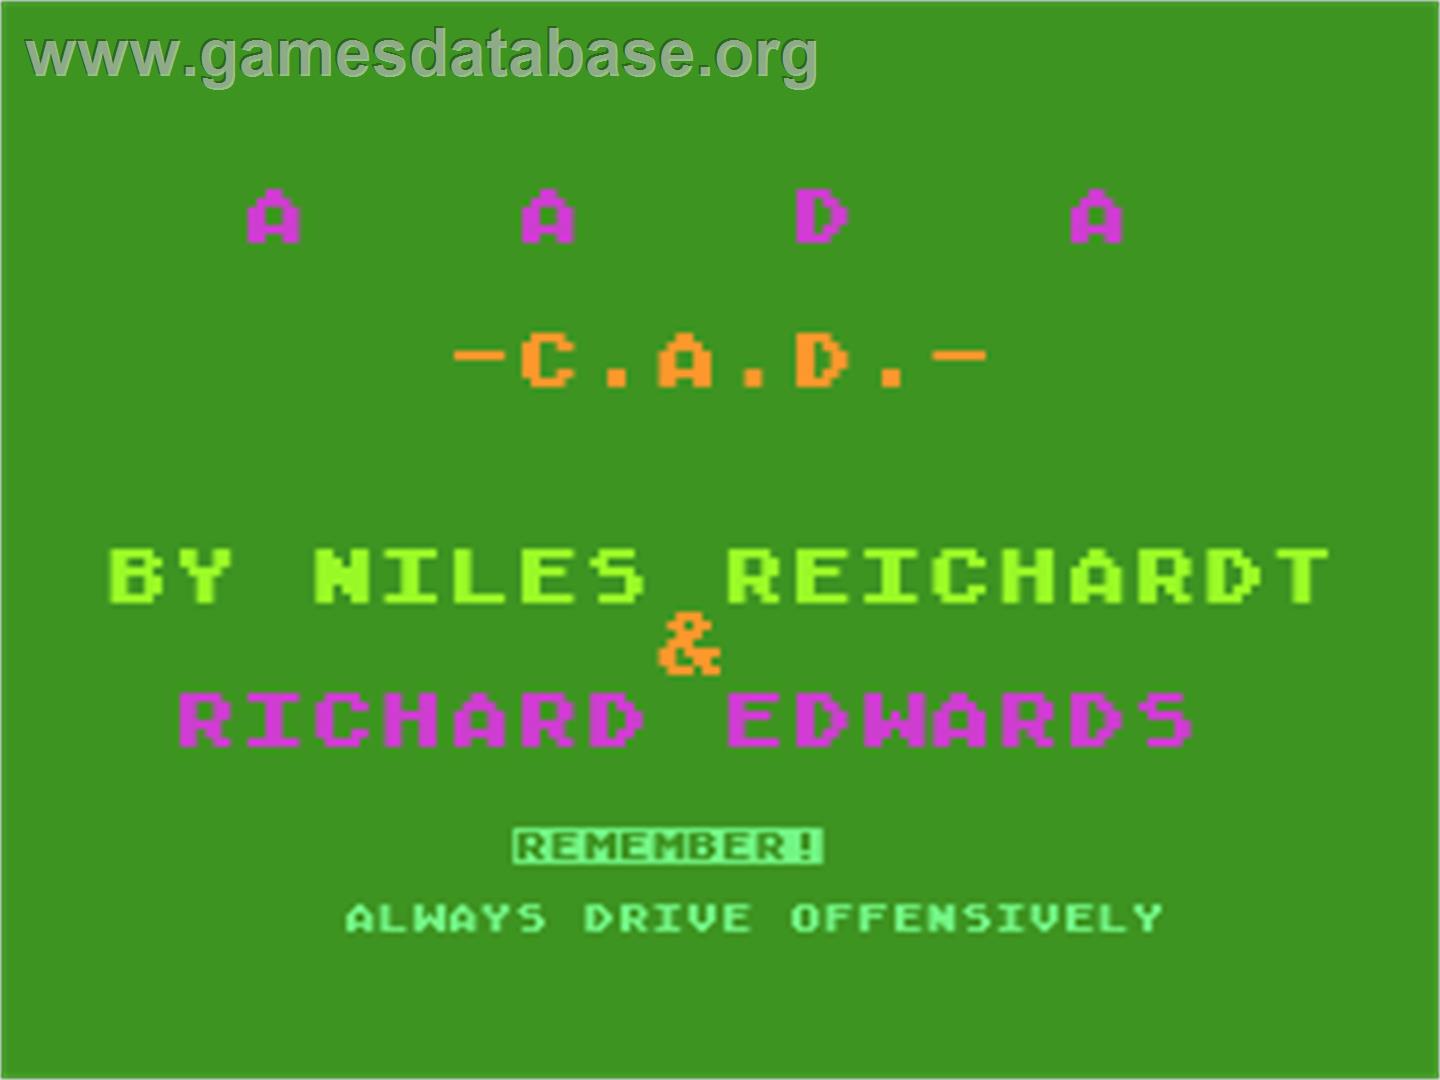 Rear Guard - Atari 8-bit - Artwork - Title Screen